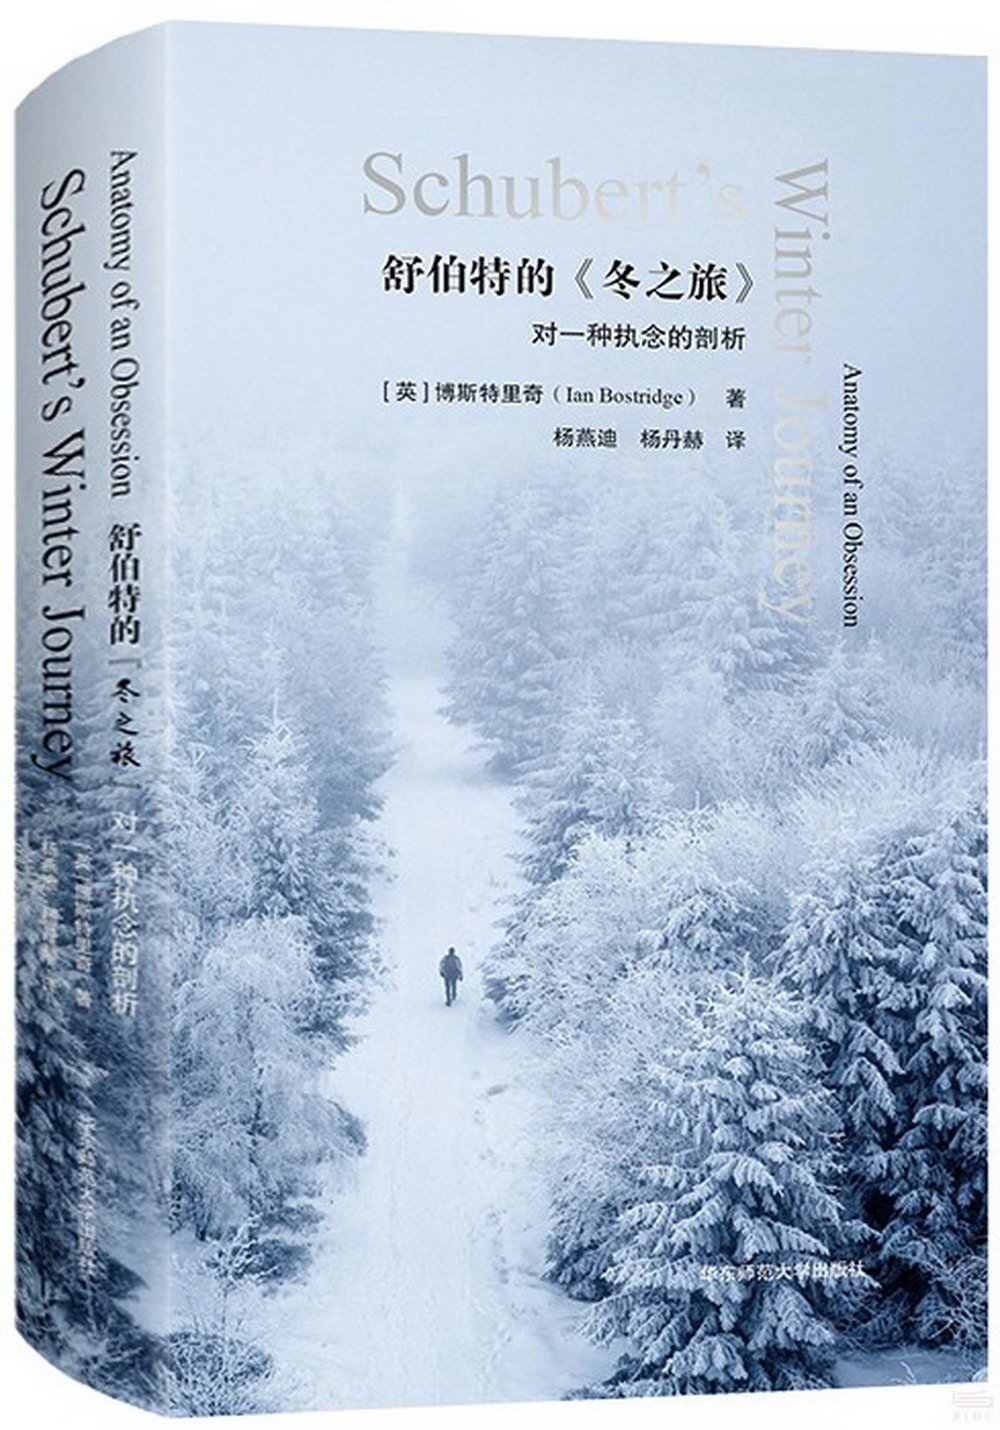 舒伯特的《冬之旅》：對一種執念的剖析